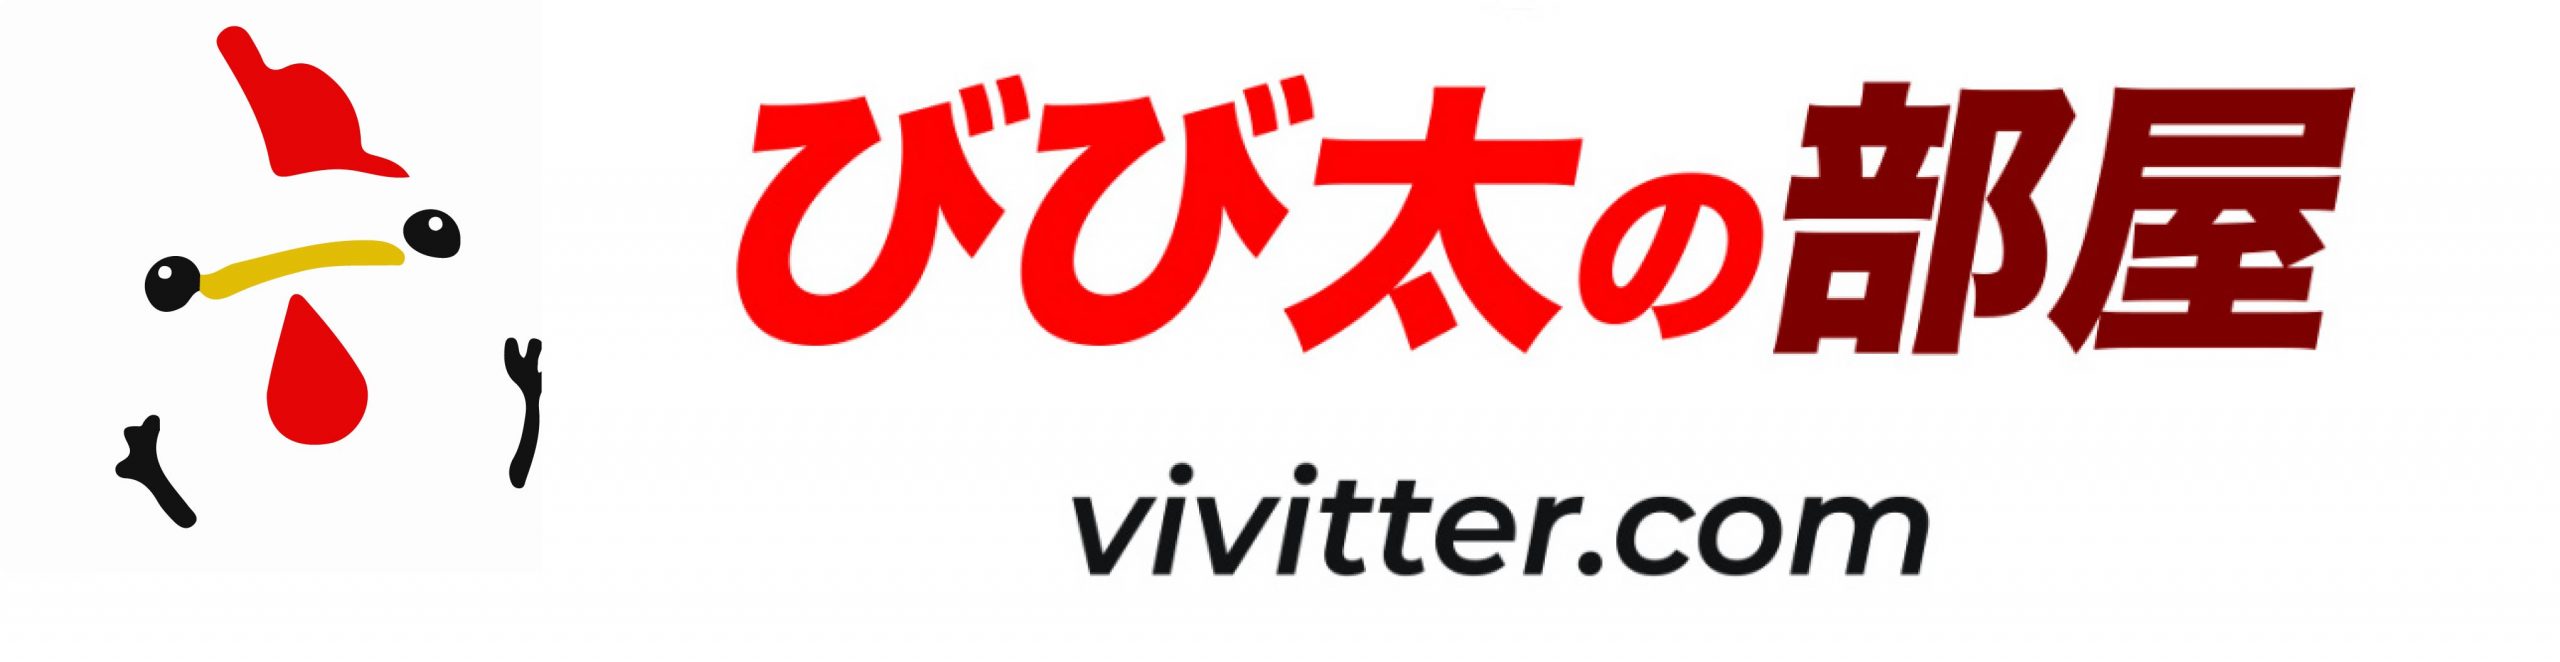 びび太の部屋 - vivitter.com